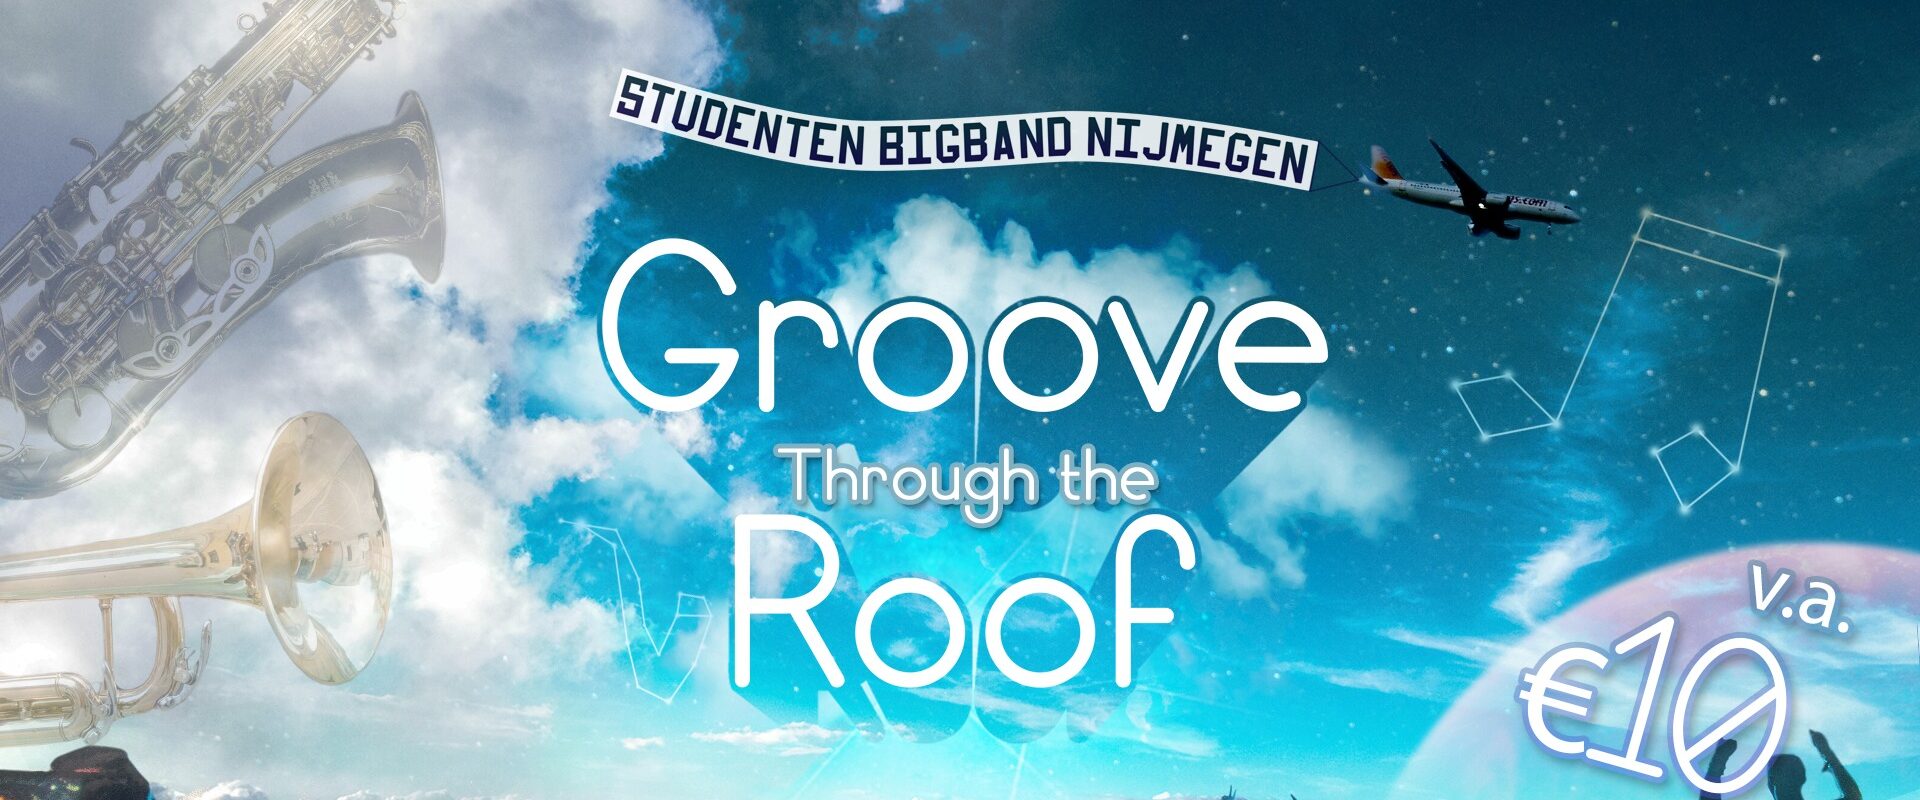 SBBN presenteert: Groove Through the Roof 2